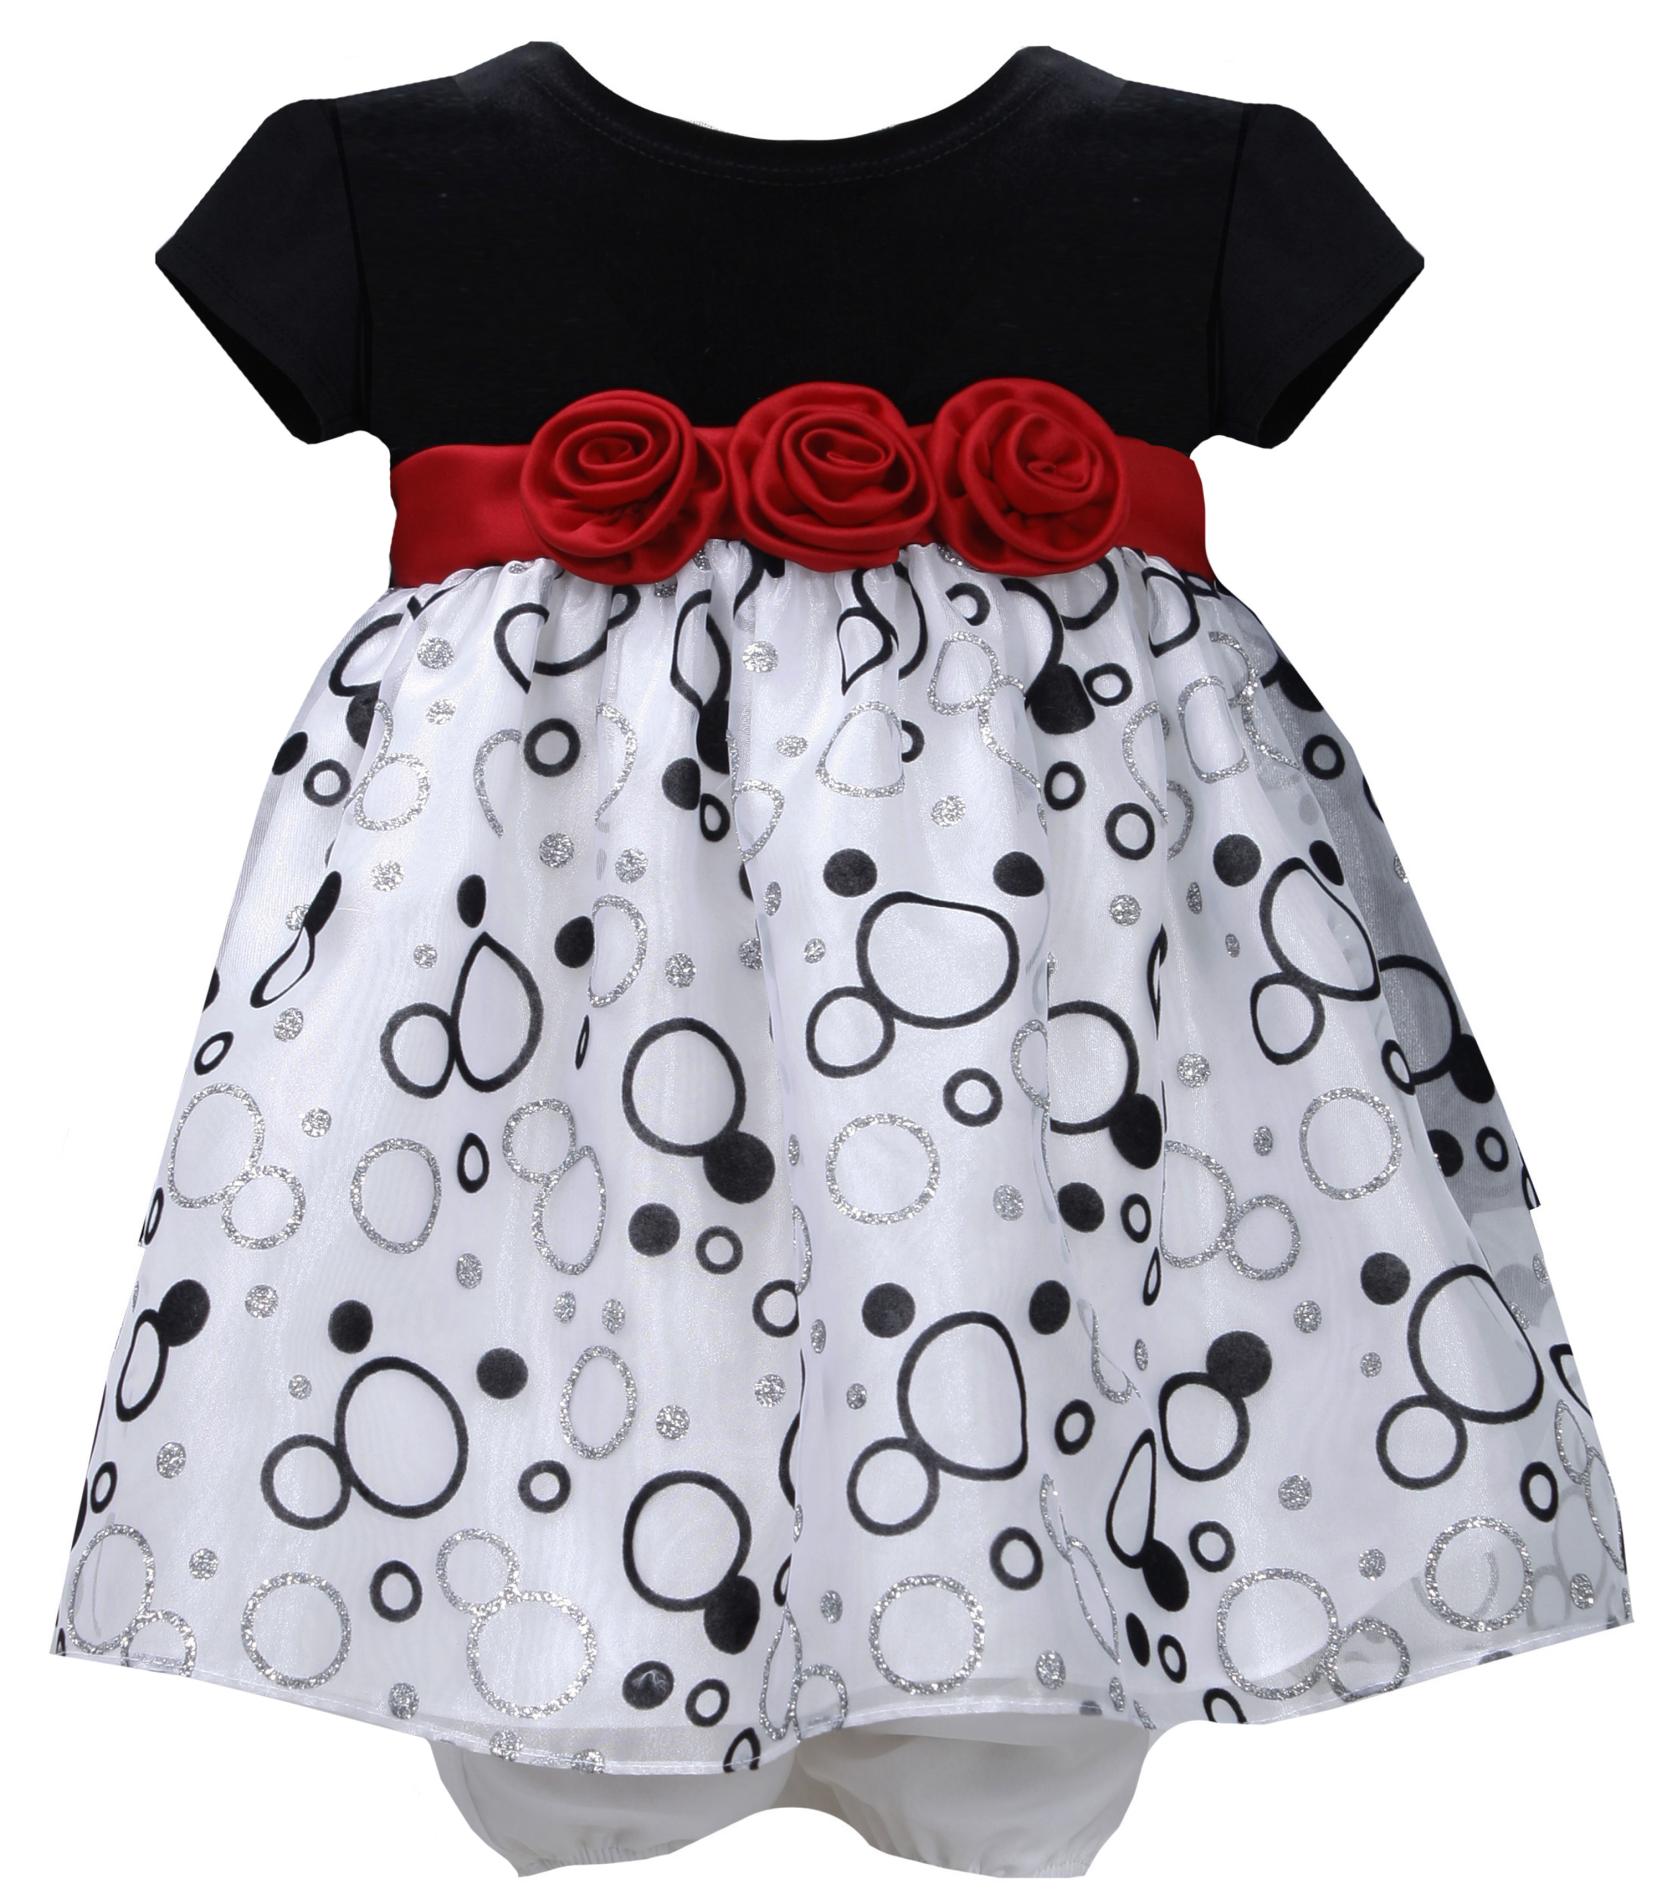 Ashley Ann Infant & Toddler Girl's Occasion Dress & Diaper Cover - Glitter